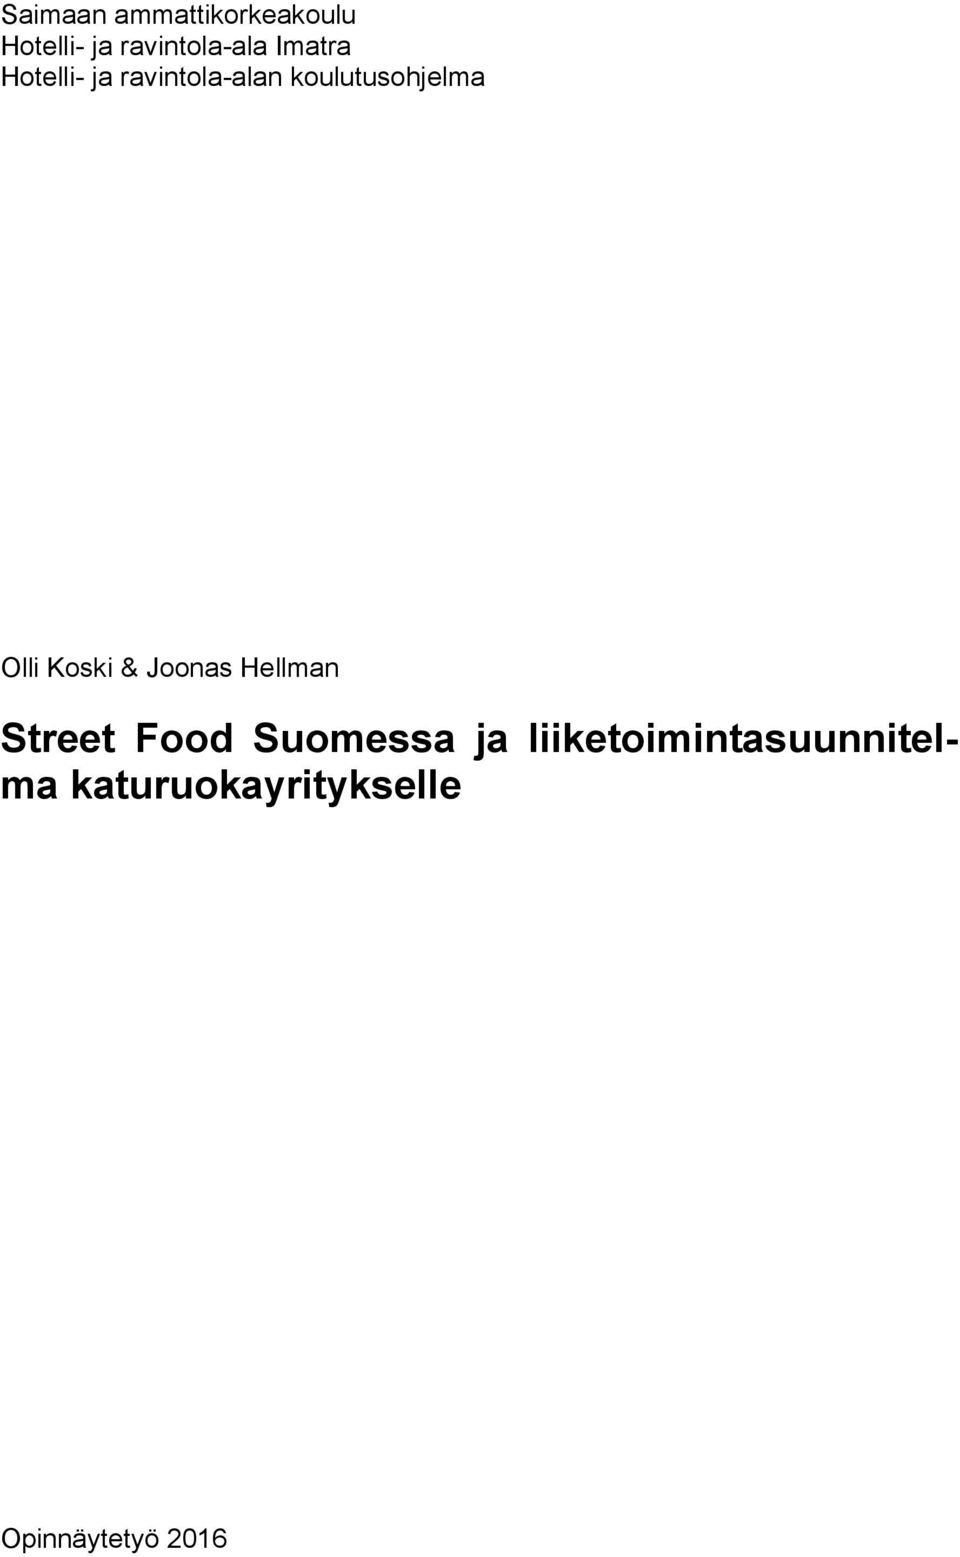 Koski & Joonas Hellman Street Food Suomessa ja